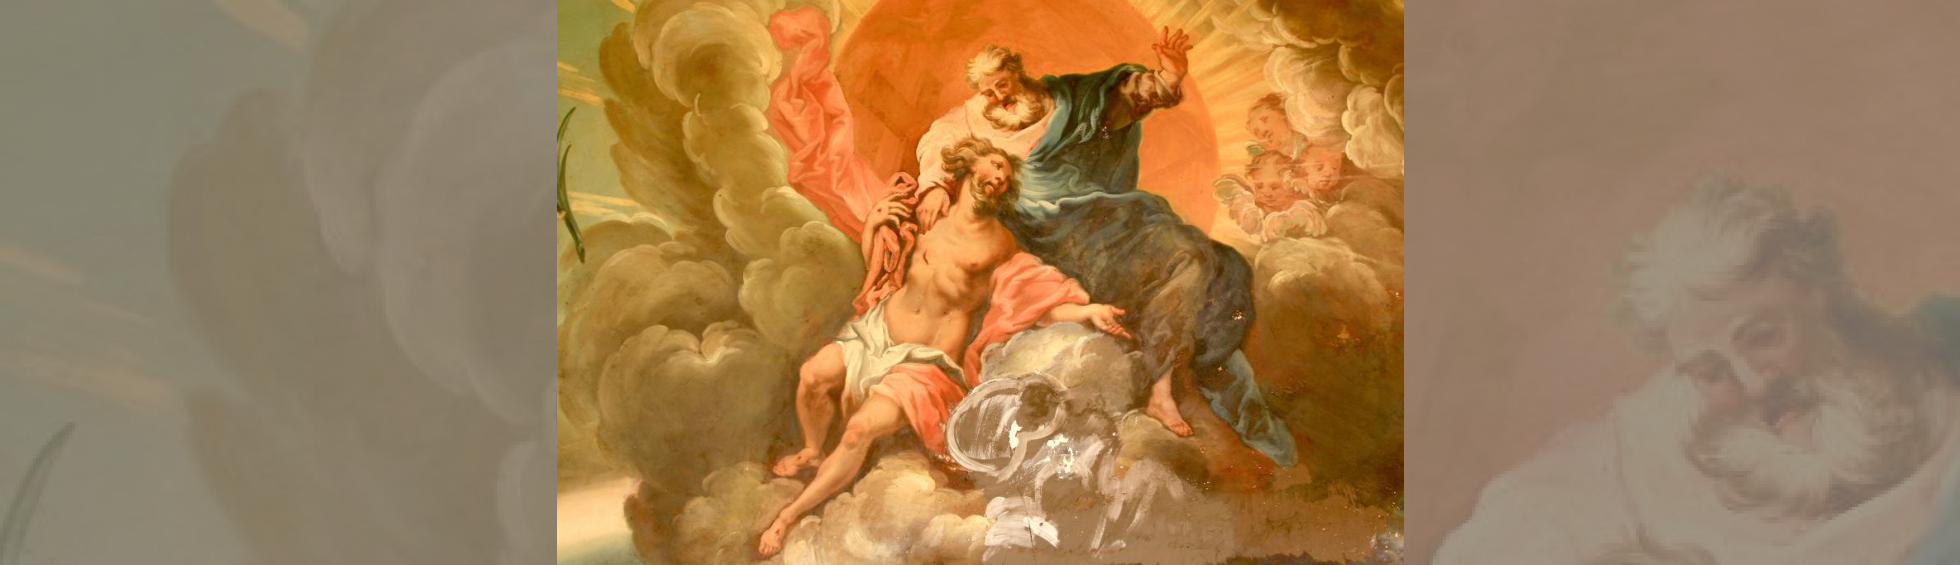 Détail du plafond:Dieu sur son nuage accueillant le Christ au ciel